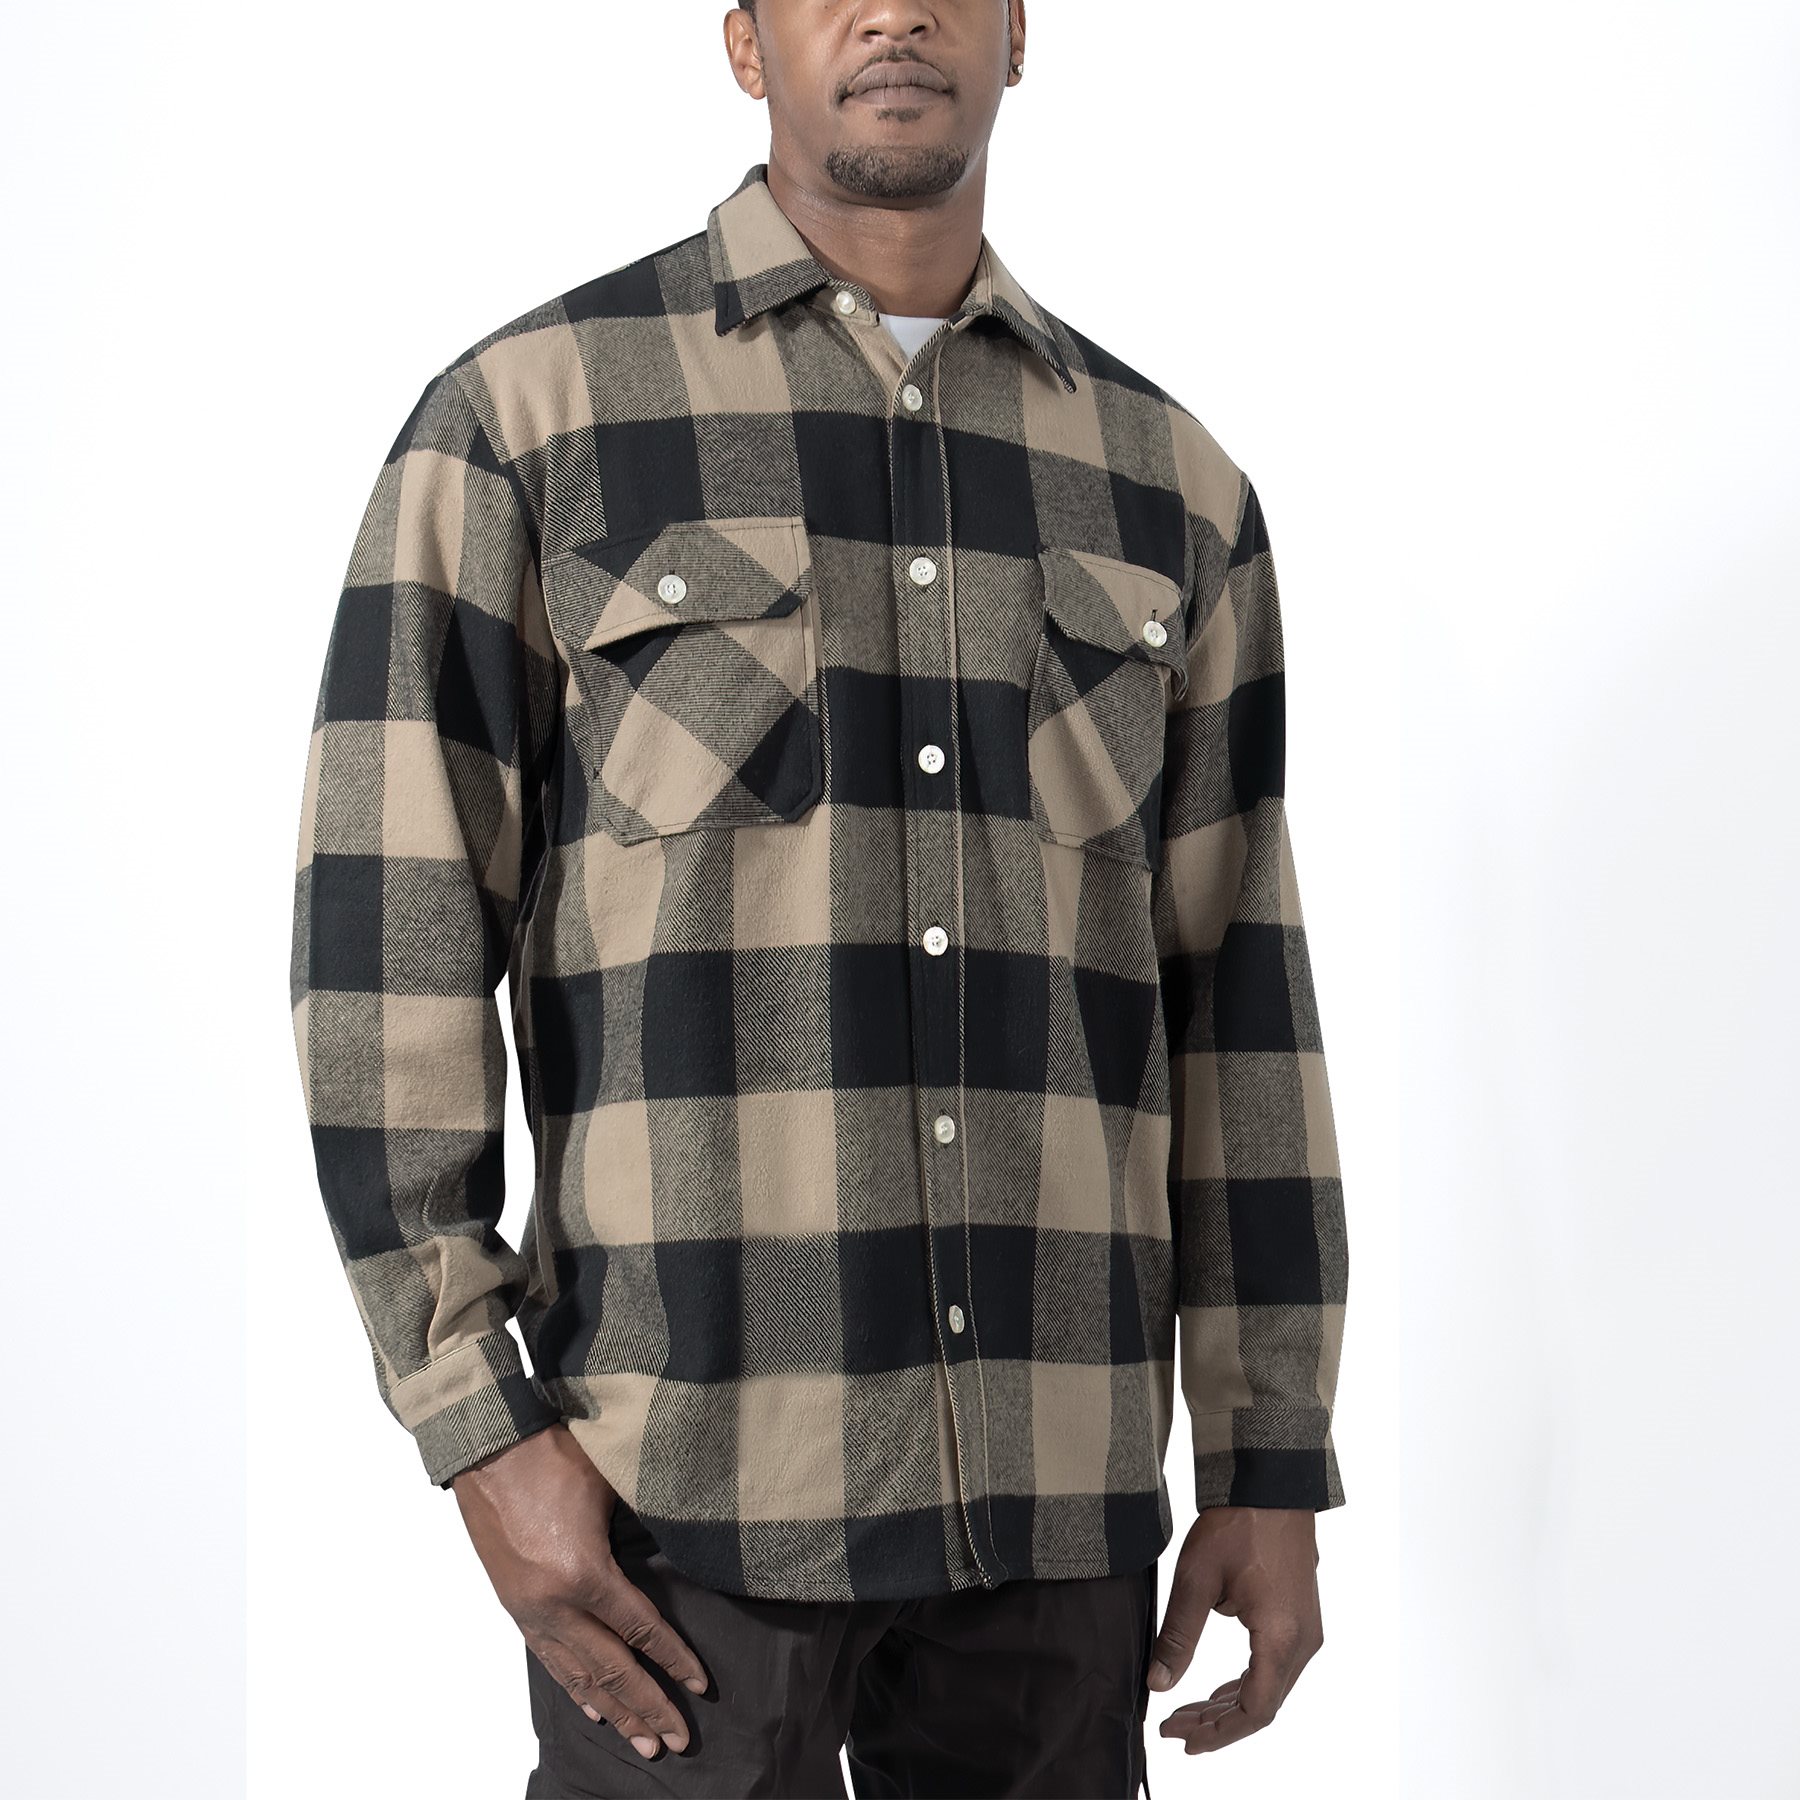 Lumberjack plaid shirt FLANNEL COYOTE BROWN ROTHCO 47380 L-11